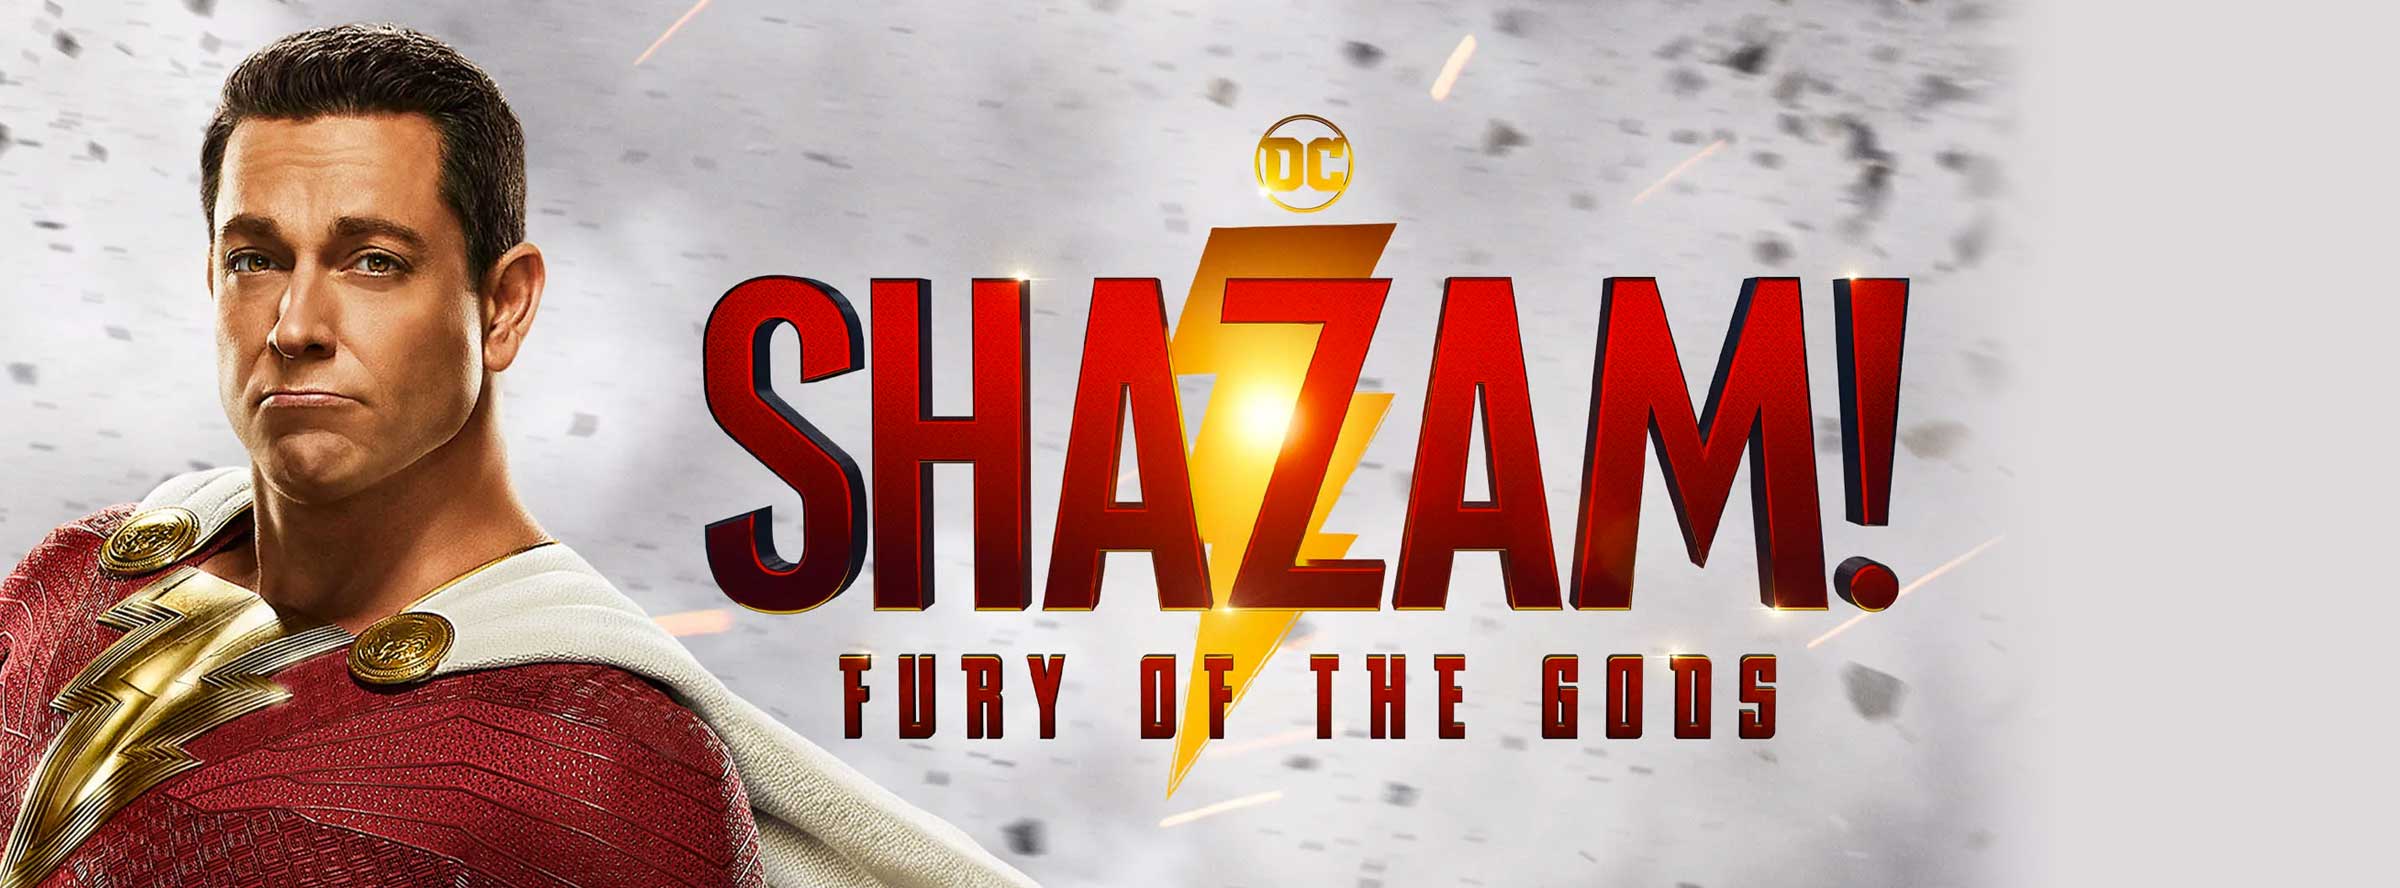 Slider Image for Shazam! Fury of the Gods                                                   